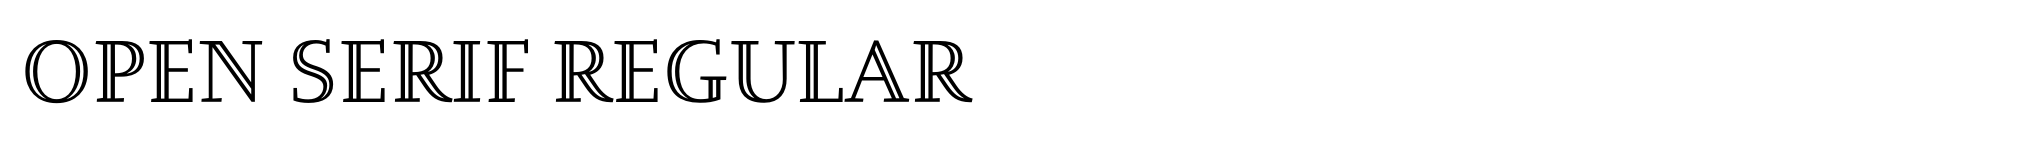 Open Serif Regular Bild